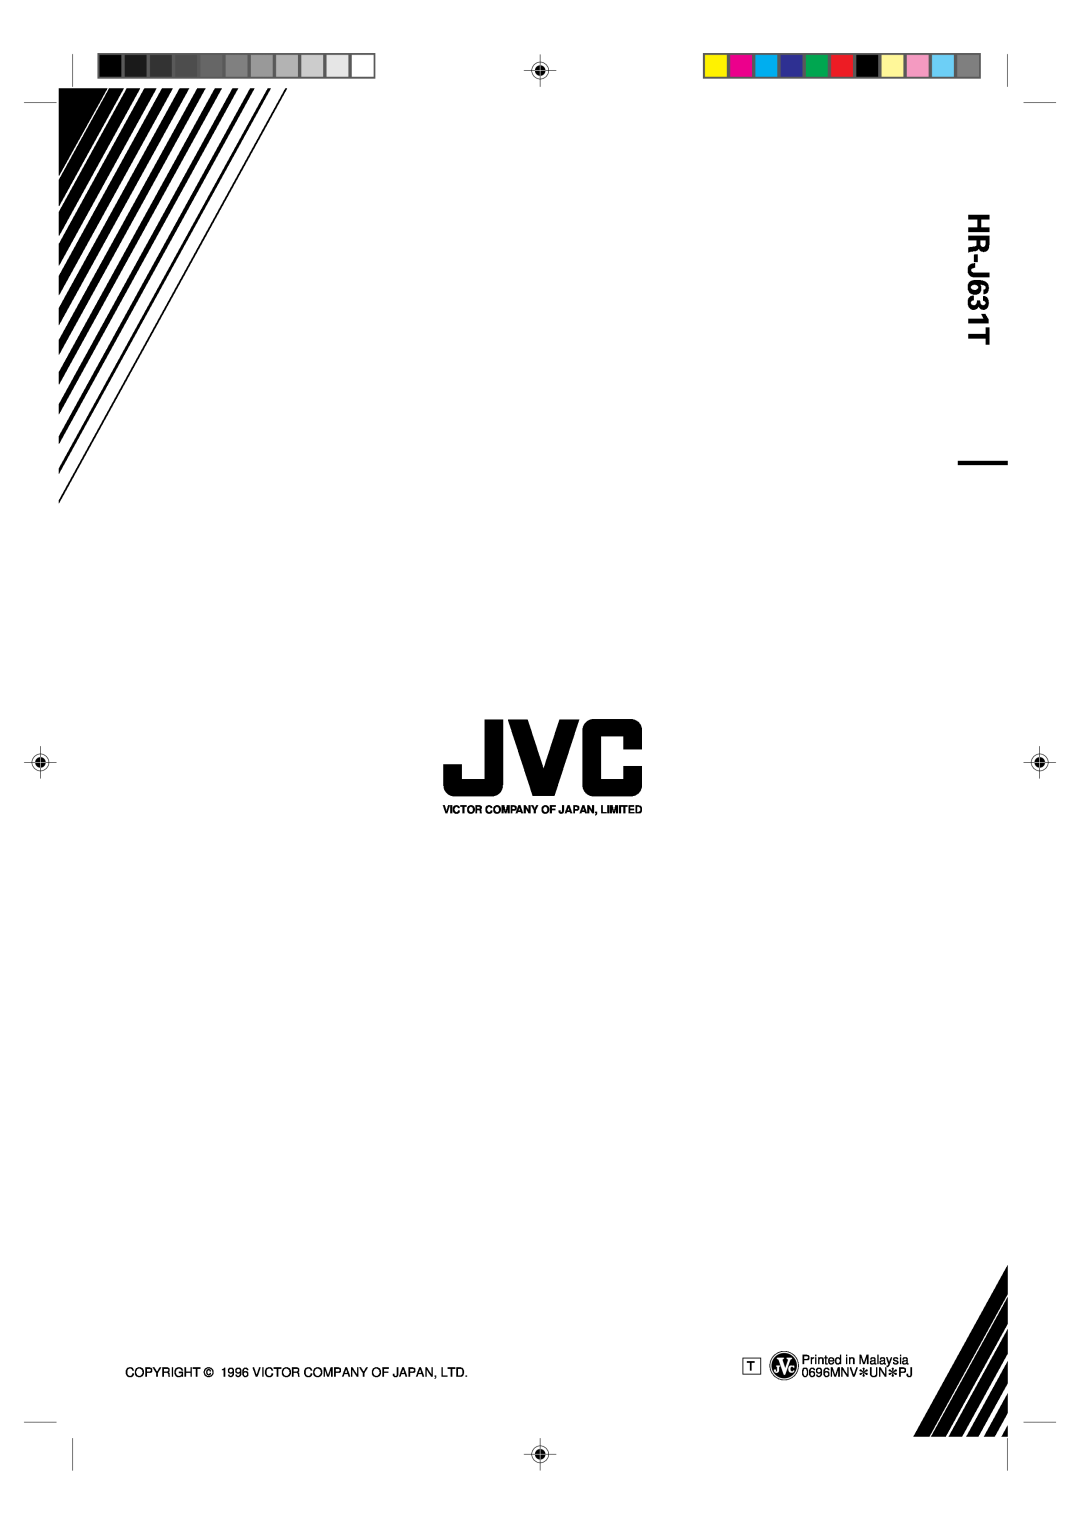 JVC HR-J631T manual Printed in Malaysia 0696MNV*UN*PJ 